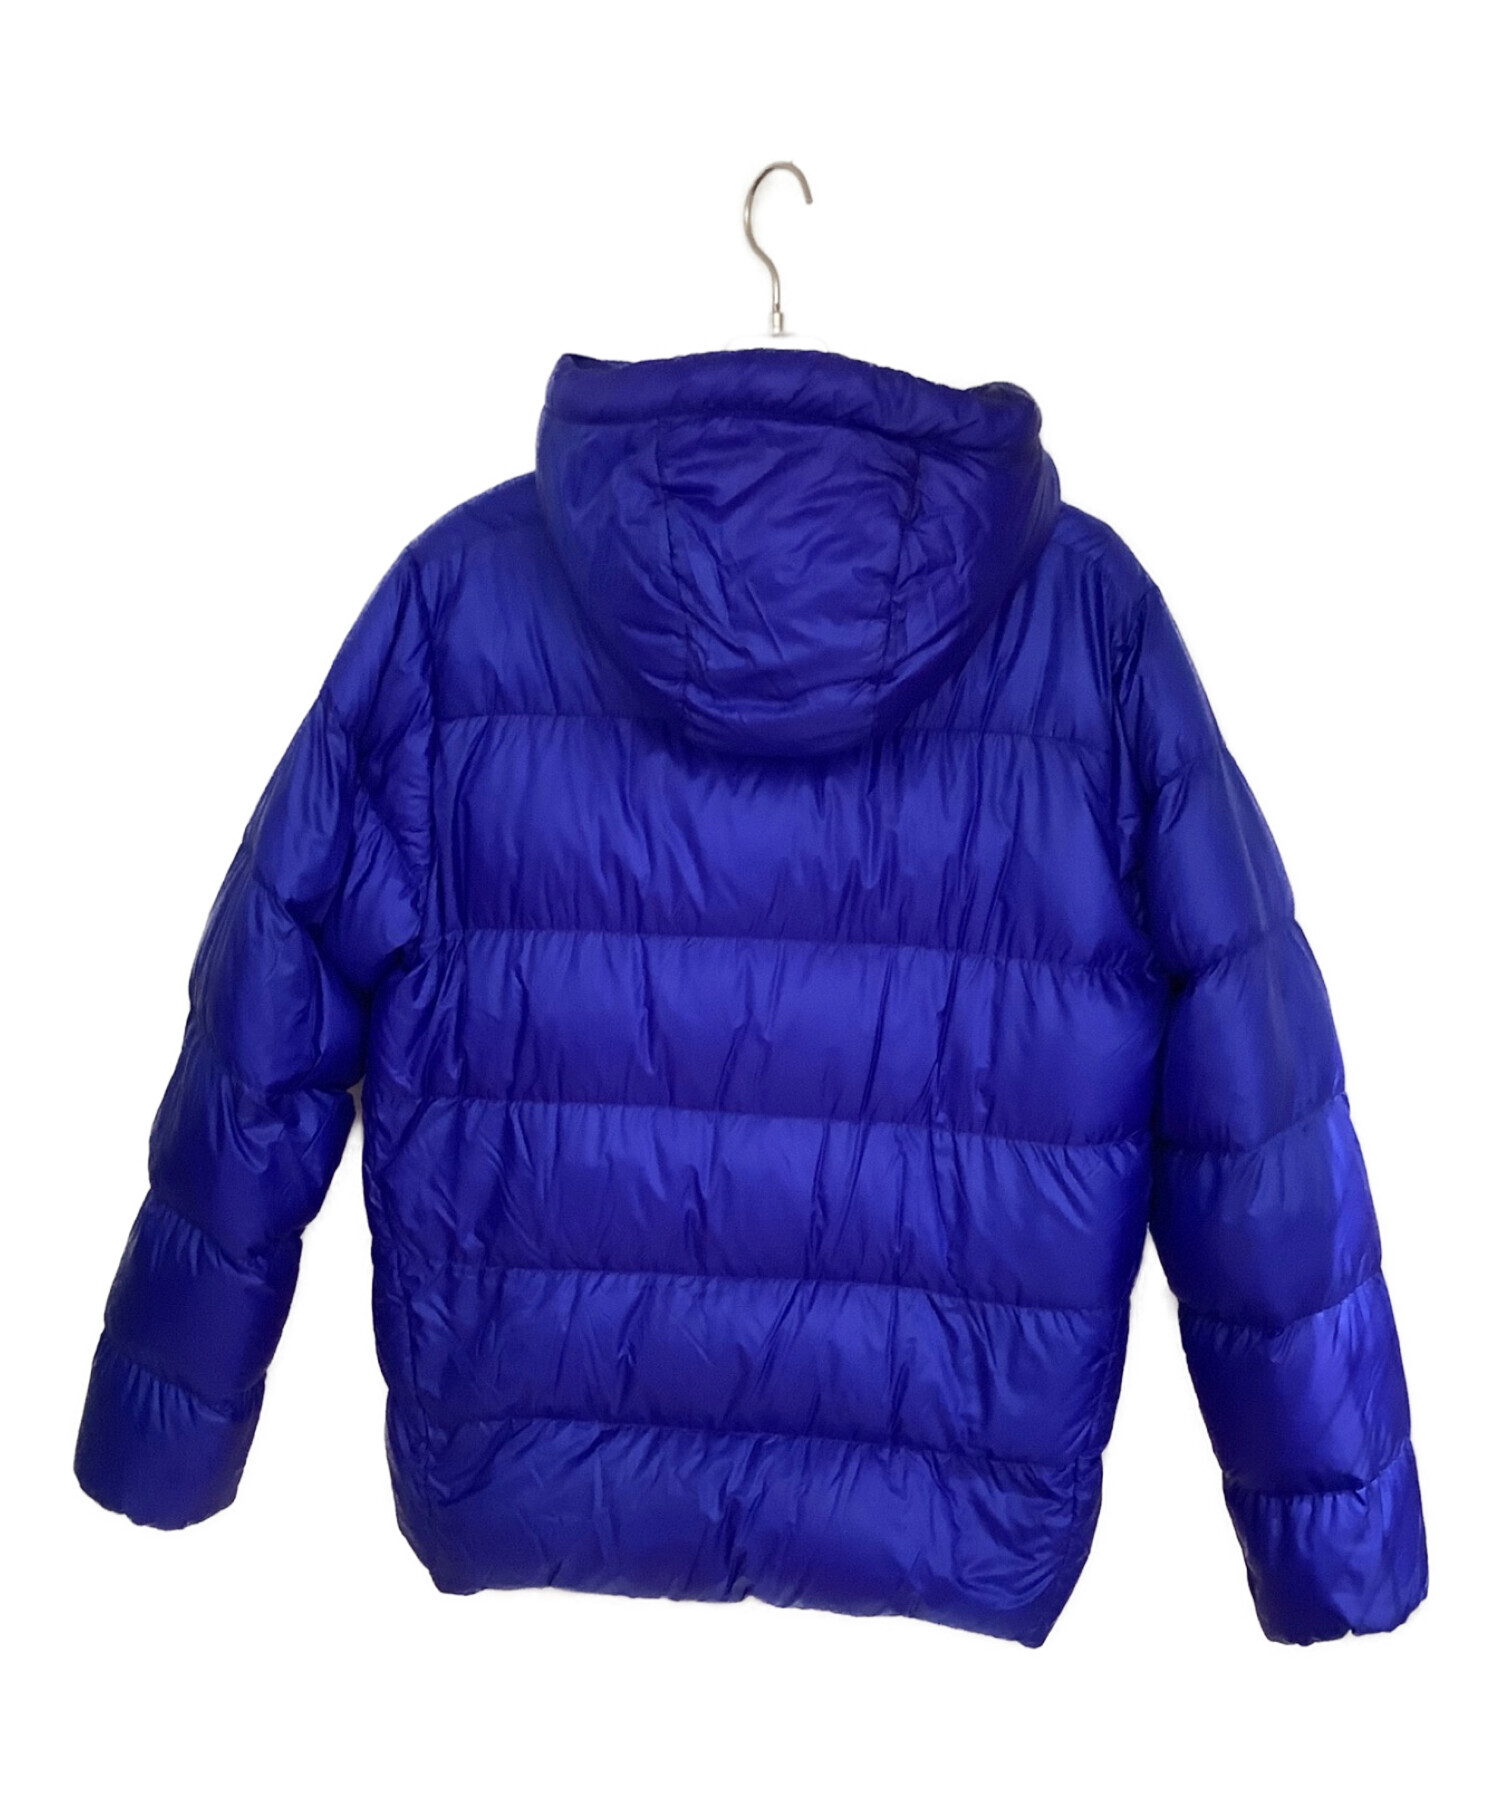 Patagonia (パタゴニア) ダウンジャケット ブルー サイズ:M